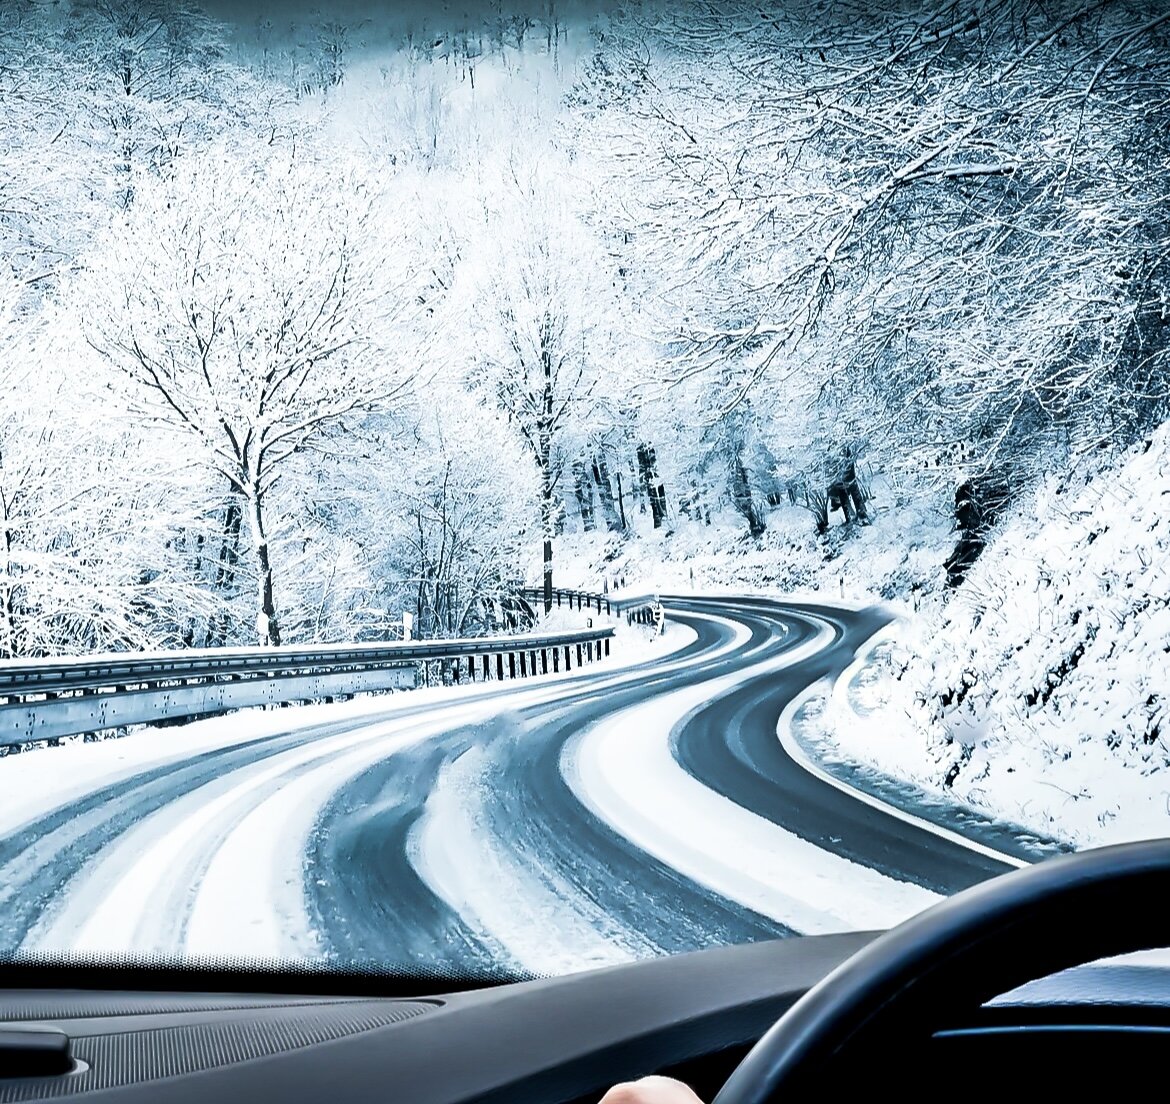  Зима - это время, когда автомобили подвергаются особым испытаниям из-за низких температур, снегопадов и гололеда.